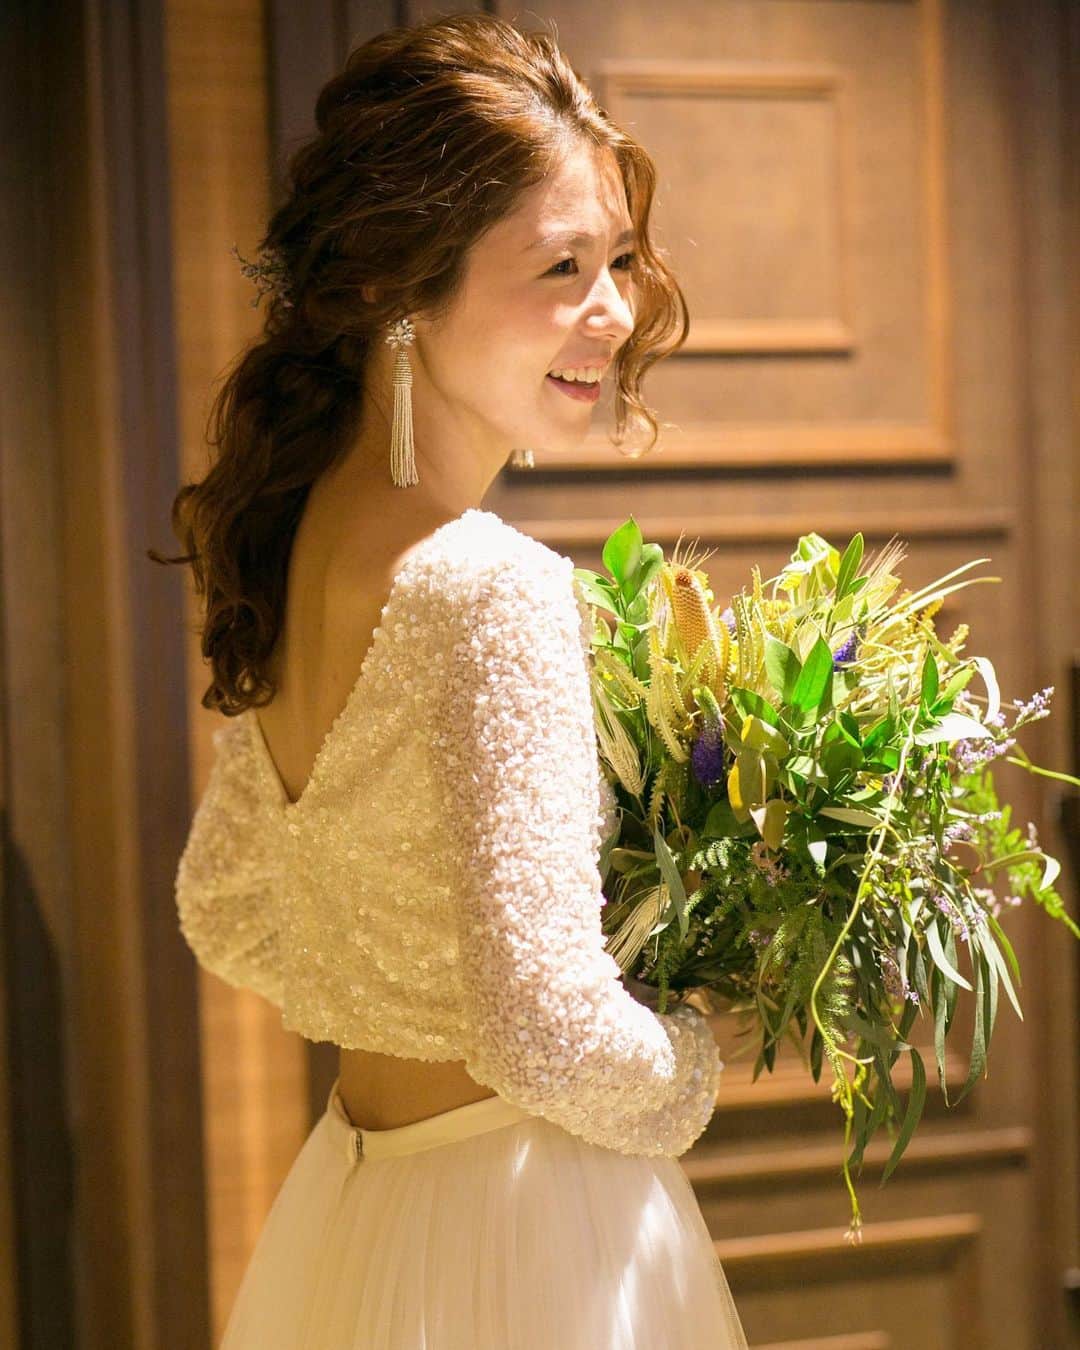 QUANTIC・クアンティックのインスタグラム：「. .QUANTICリアルウエディング . . バックスタイルが可愛いドレス👗 自分が着たいと思ったドレスに身を包んだ時の嬉しさは結婚式ならではのお気持ちですね. . . #QUANTIC #クアンティック #結婚式 #ウェディング #プレ花嫁 #卒花嫁 #福岡花嫁 #福岡結婚式 #天神 #photography#wedding #marryxoxo #ウェディングニュース #全国のプレ花嫁さんと繋がりたい #日本中のプレ花嫁さんと繋がりたい #結婚式準備#ウェディングフォト#ウェディングドレス #weddingdress #ウェディングニュース #プロポーズ#入籍#2020冬婚 #2021春婚 #2021秋婚 #2021夏婚 #令和婚#和装婚 #brides #justmarried」